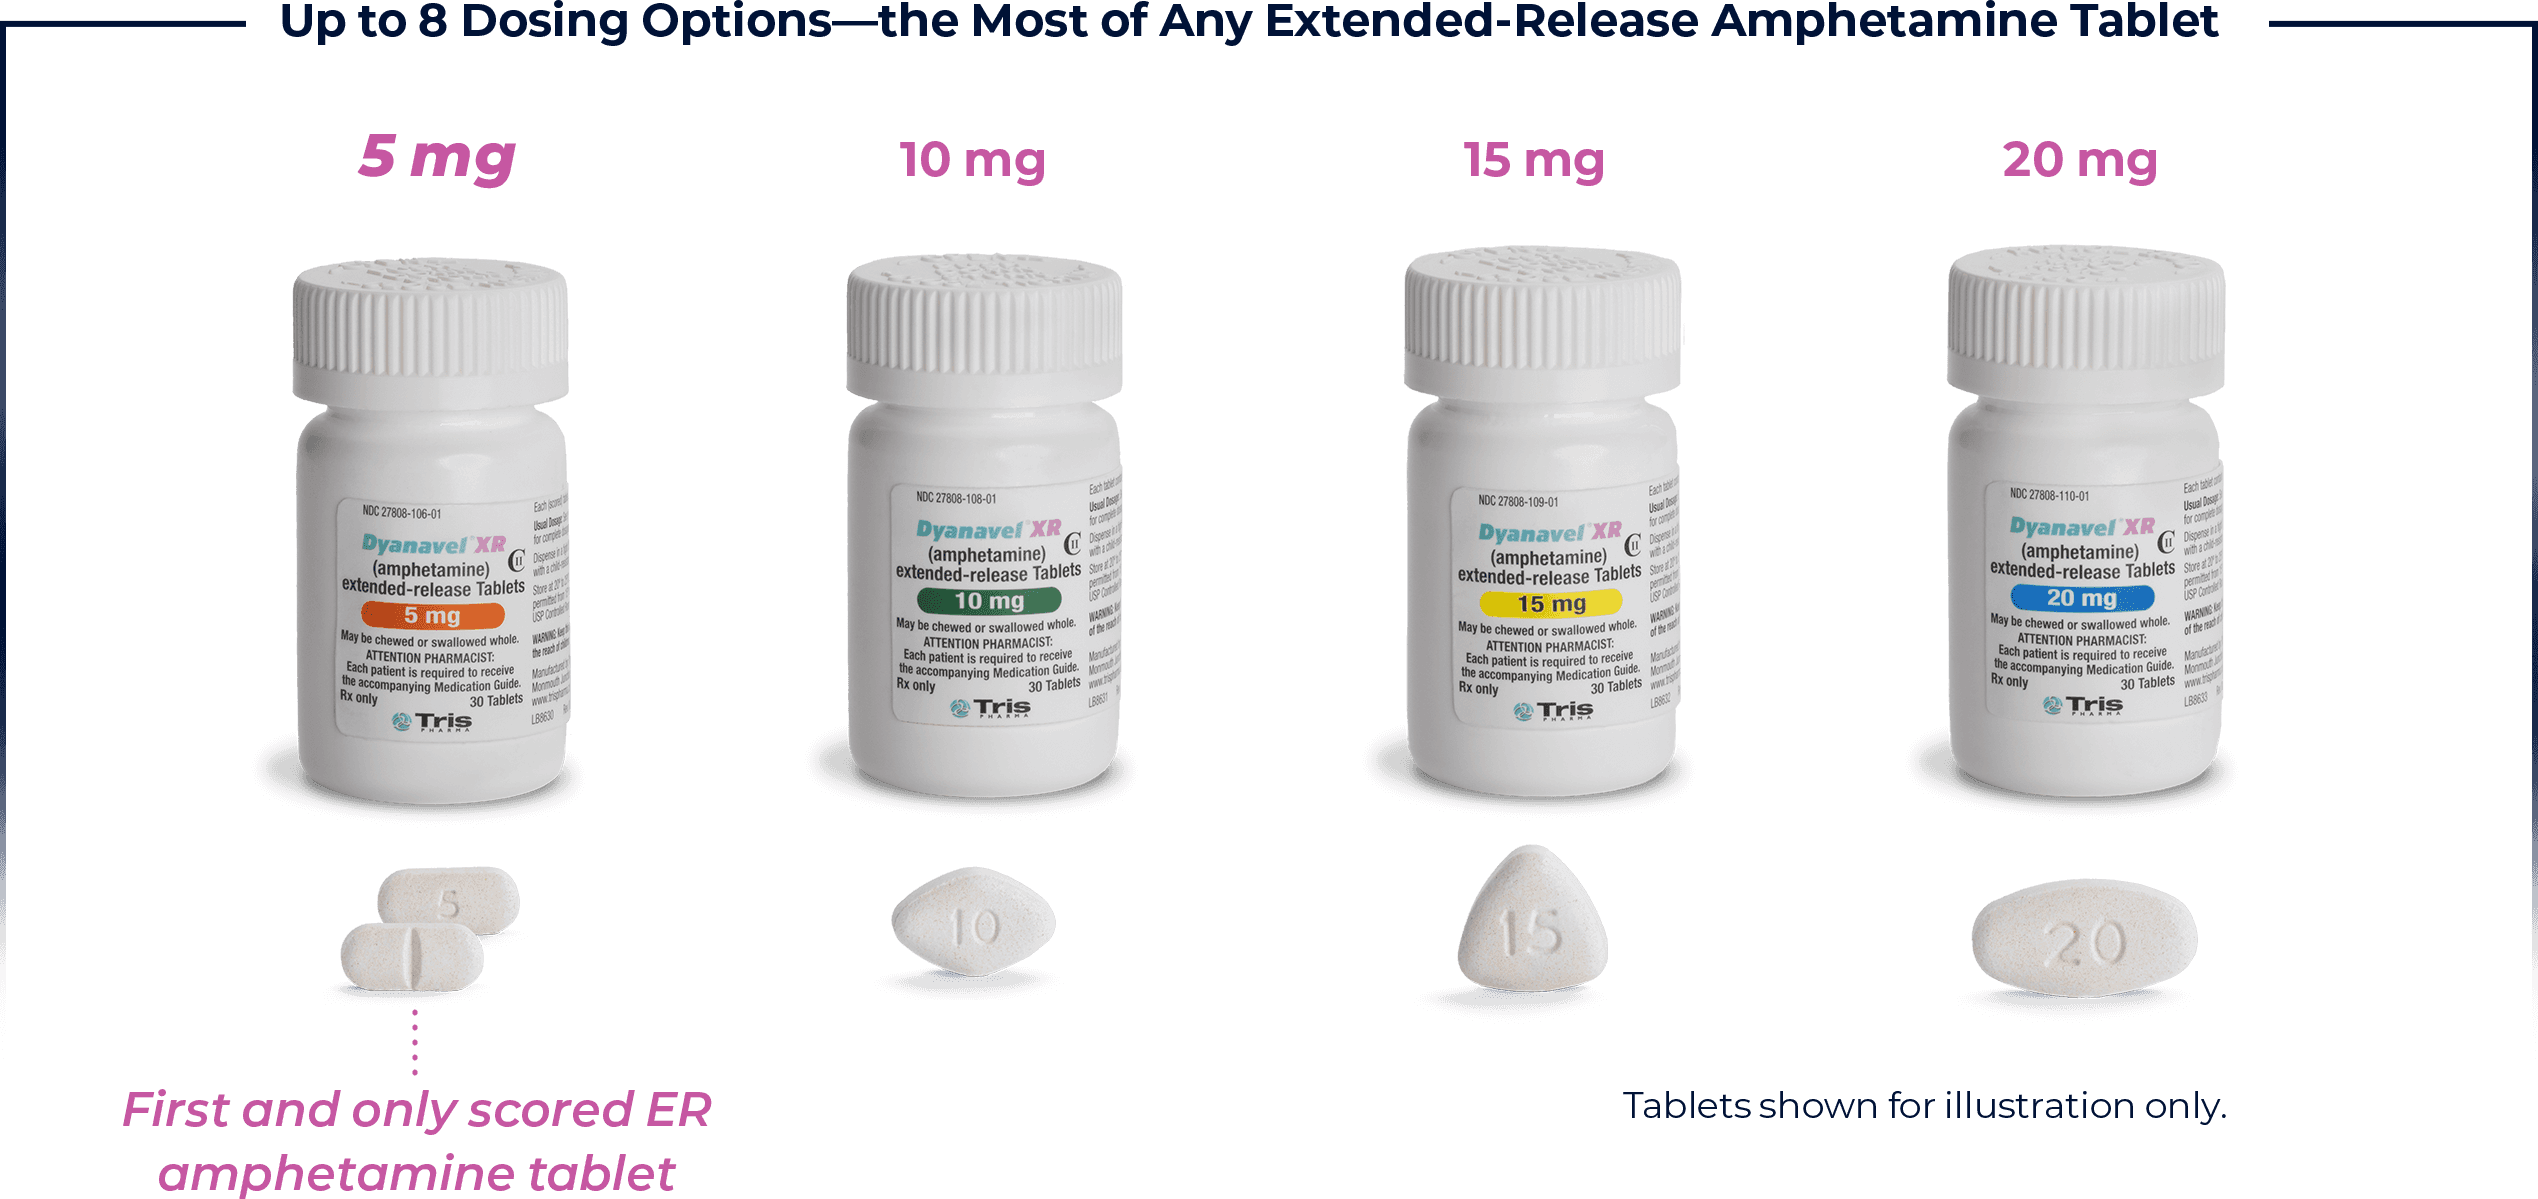 Dyanavel XR Amphetamine Tablets Dosing Options